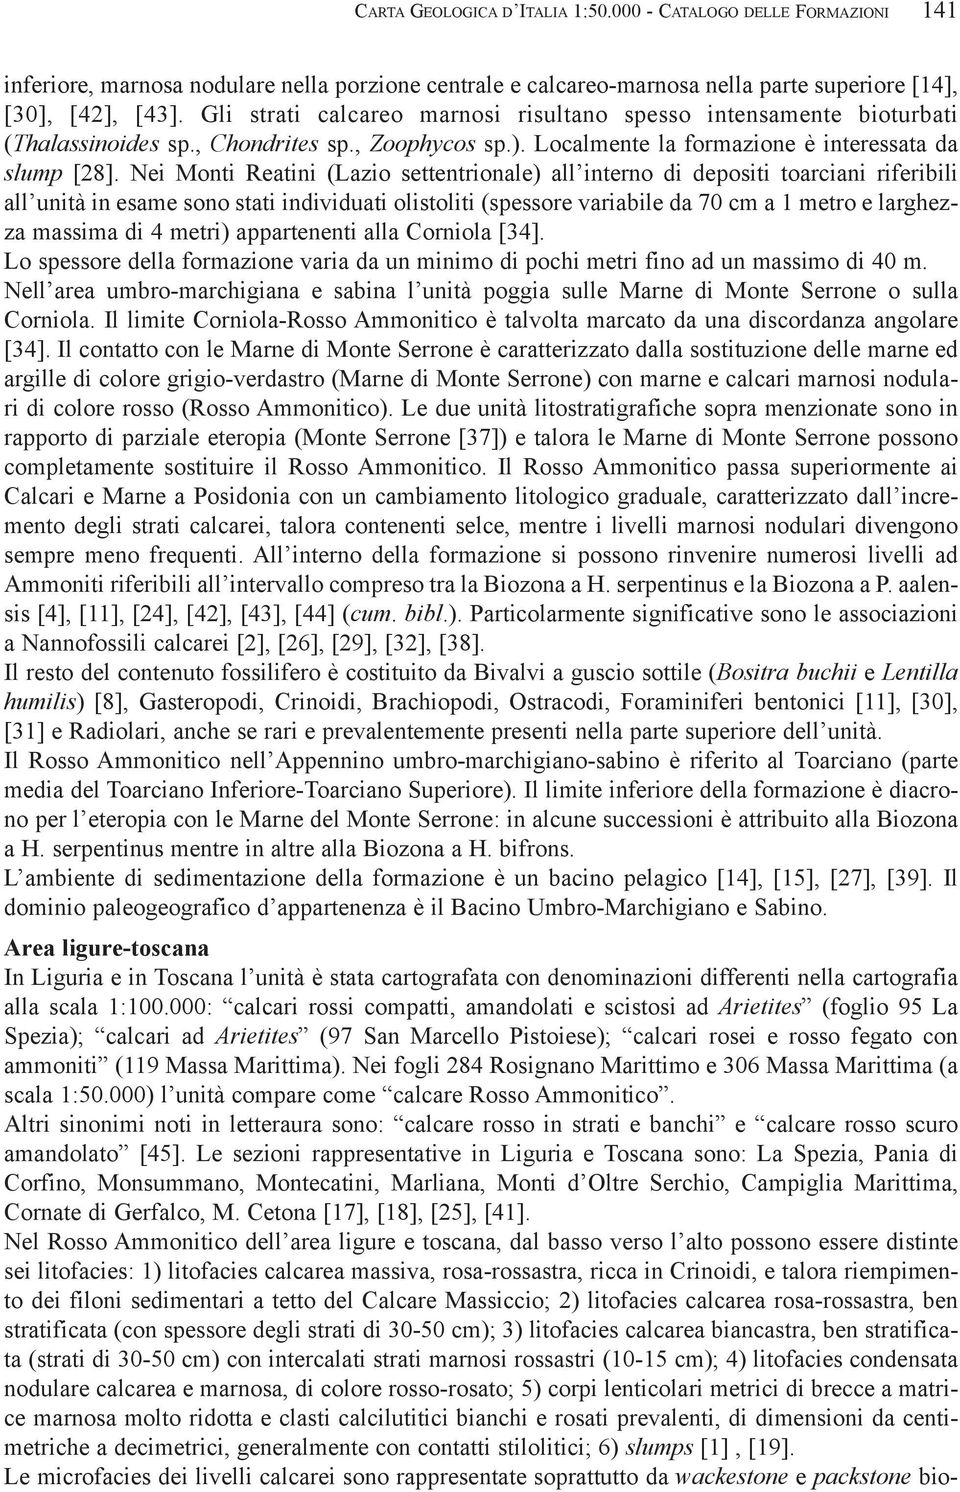 Nei Monti Reatini (Lazio settentrionale) all interno di depositi toarciani riferibili all unità in esame sono stati individuati olistoliti (spessore variabile da 70 cm a 1 metro e larghezza massima